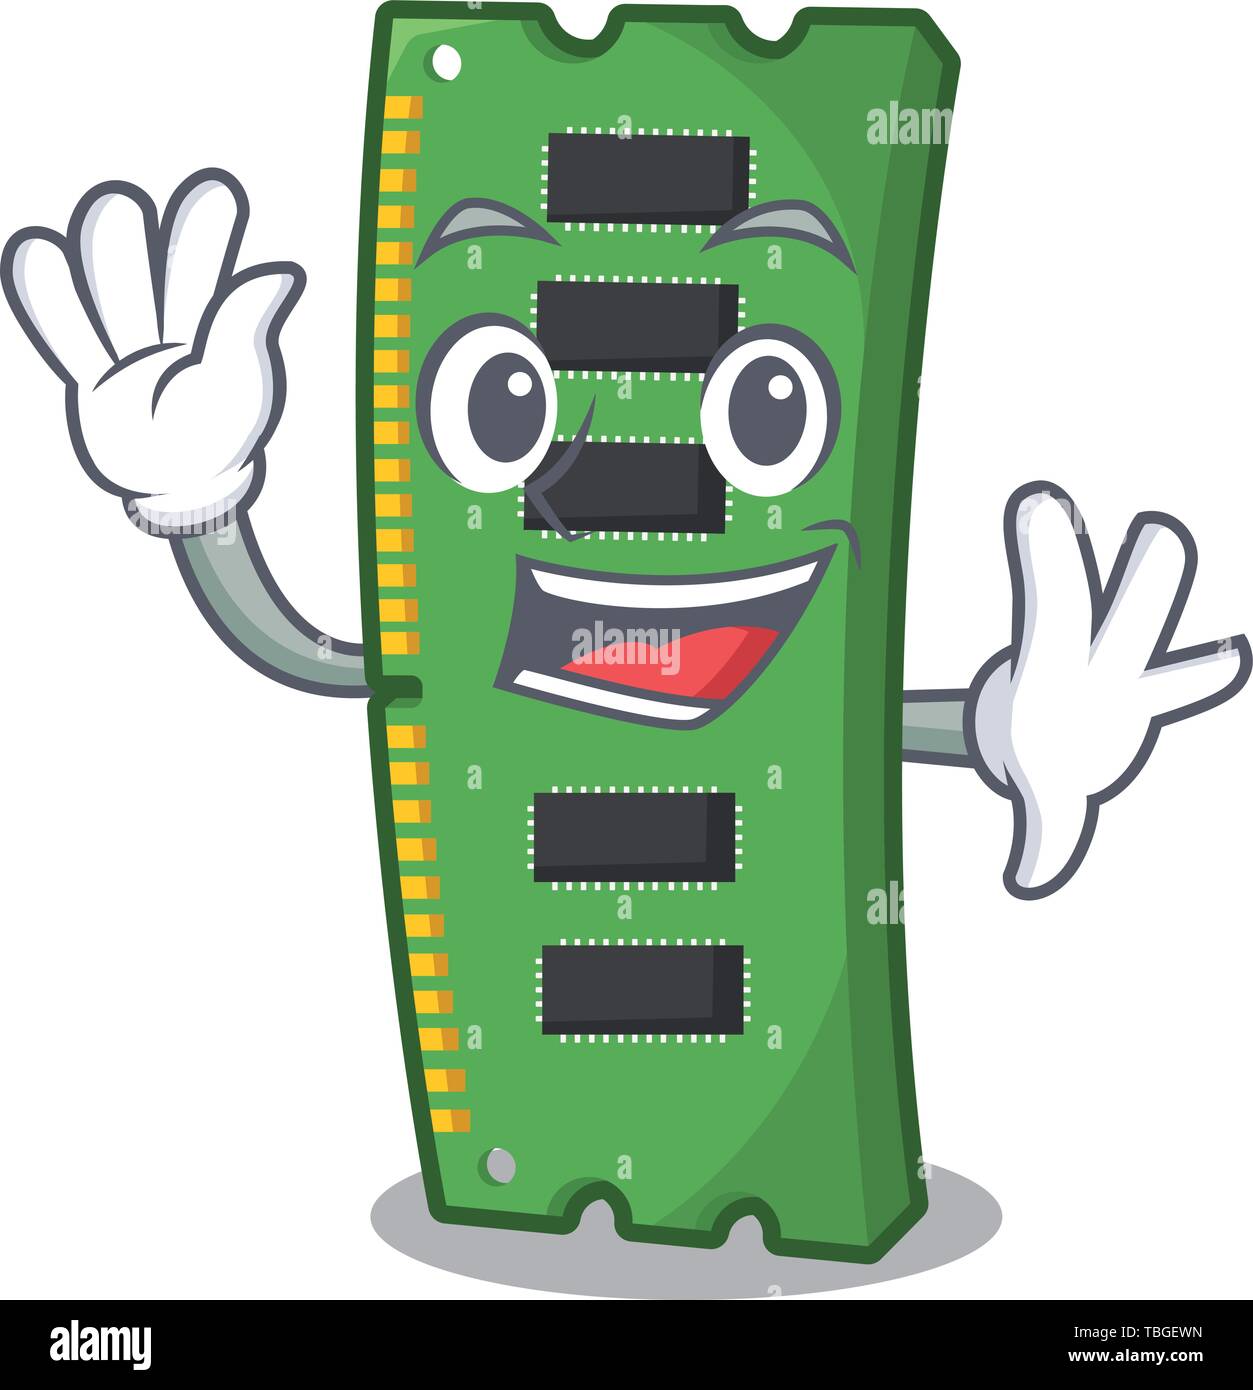 Waving RAM memory card the mascot shape Stock Vector